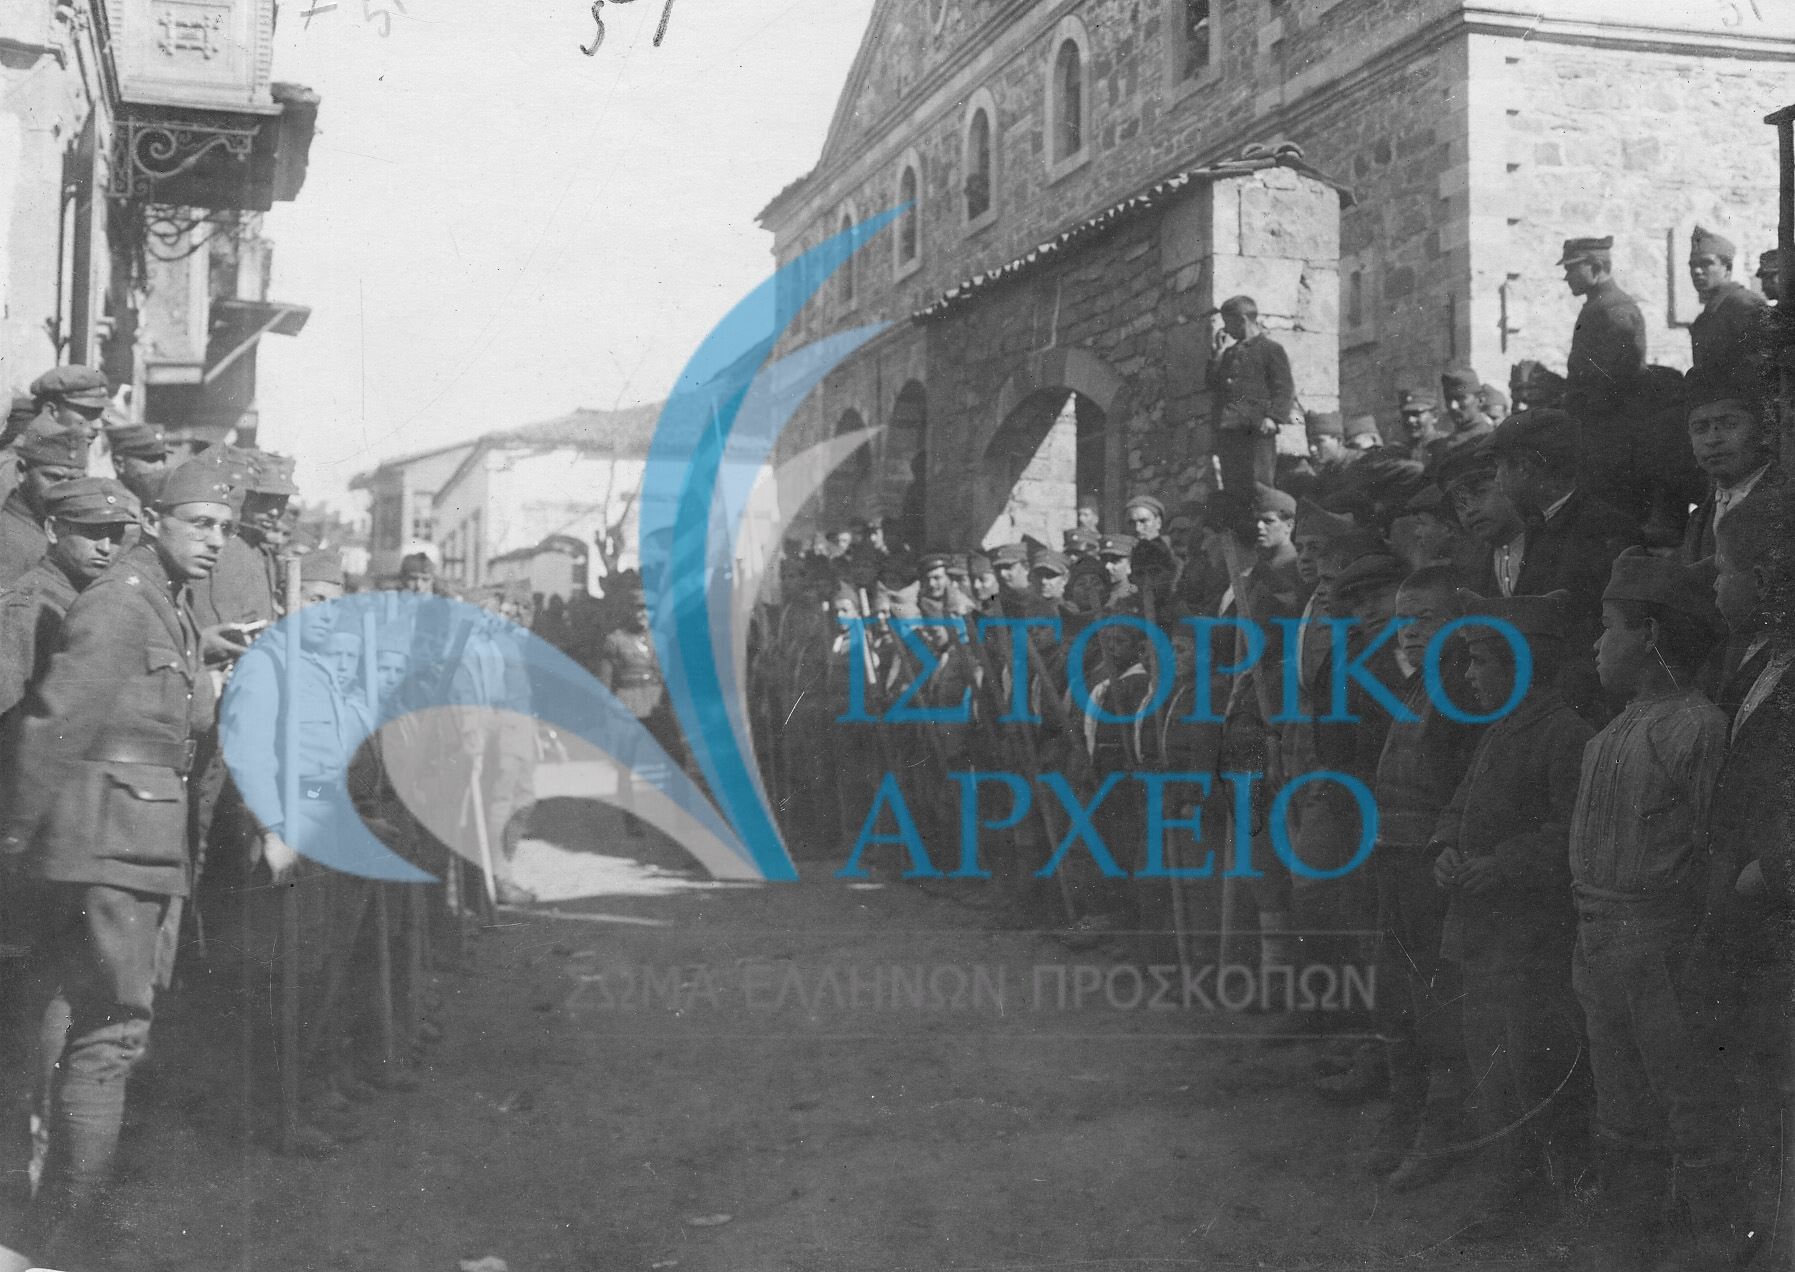 Παρατεταγμένοι πρόσκοποι, οπλίτες και αξιωματικοί του Ελληνικού Στρατού μπροστά από κτίριο ελληνική διοίκησης κατά την άφιξη επισήμου σε δράση της Β' Μεραρχίας Σμύρνης.